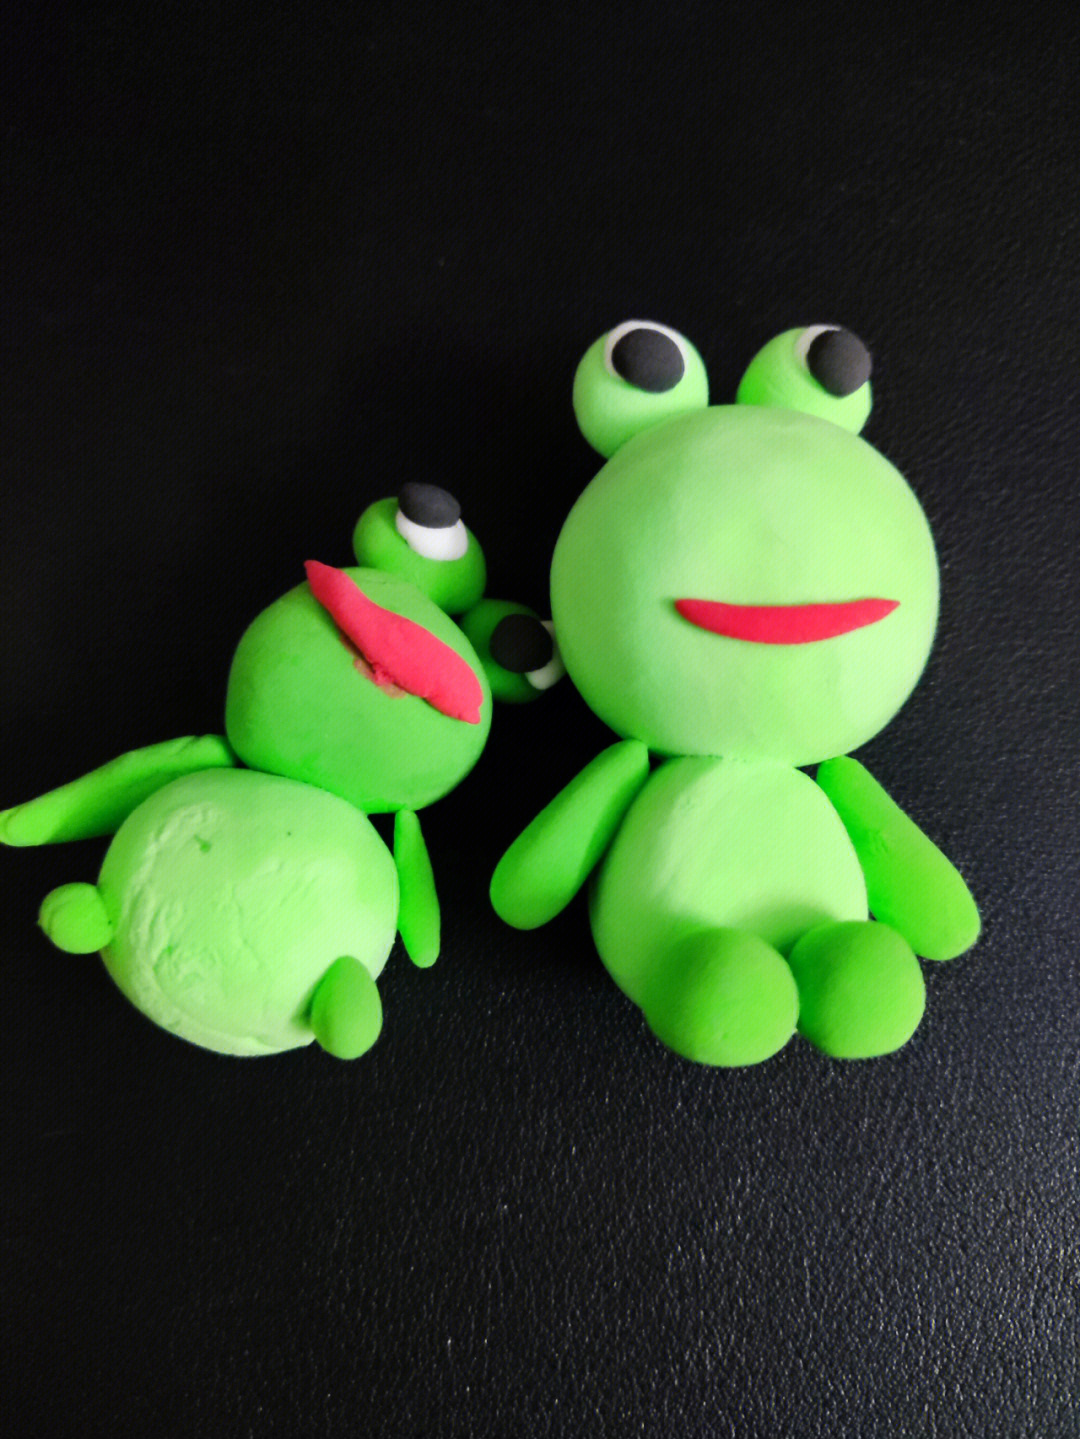 彩泥小动物青蛙图片